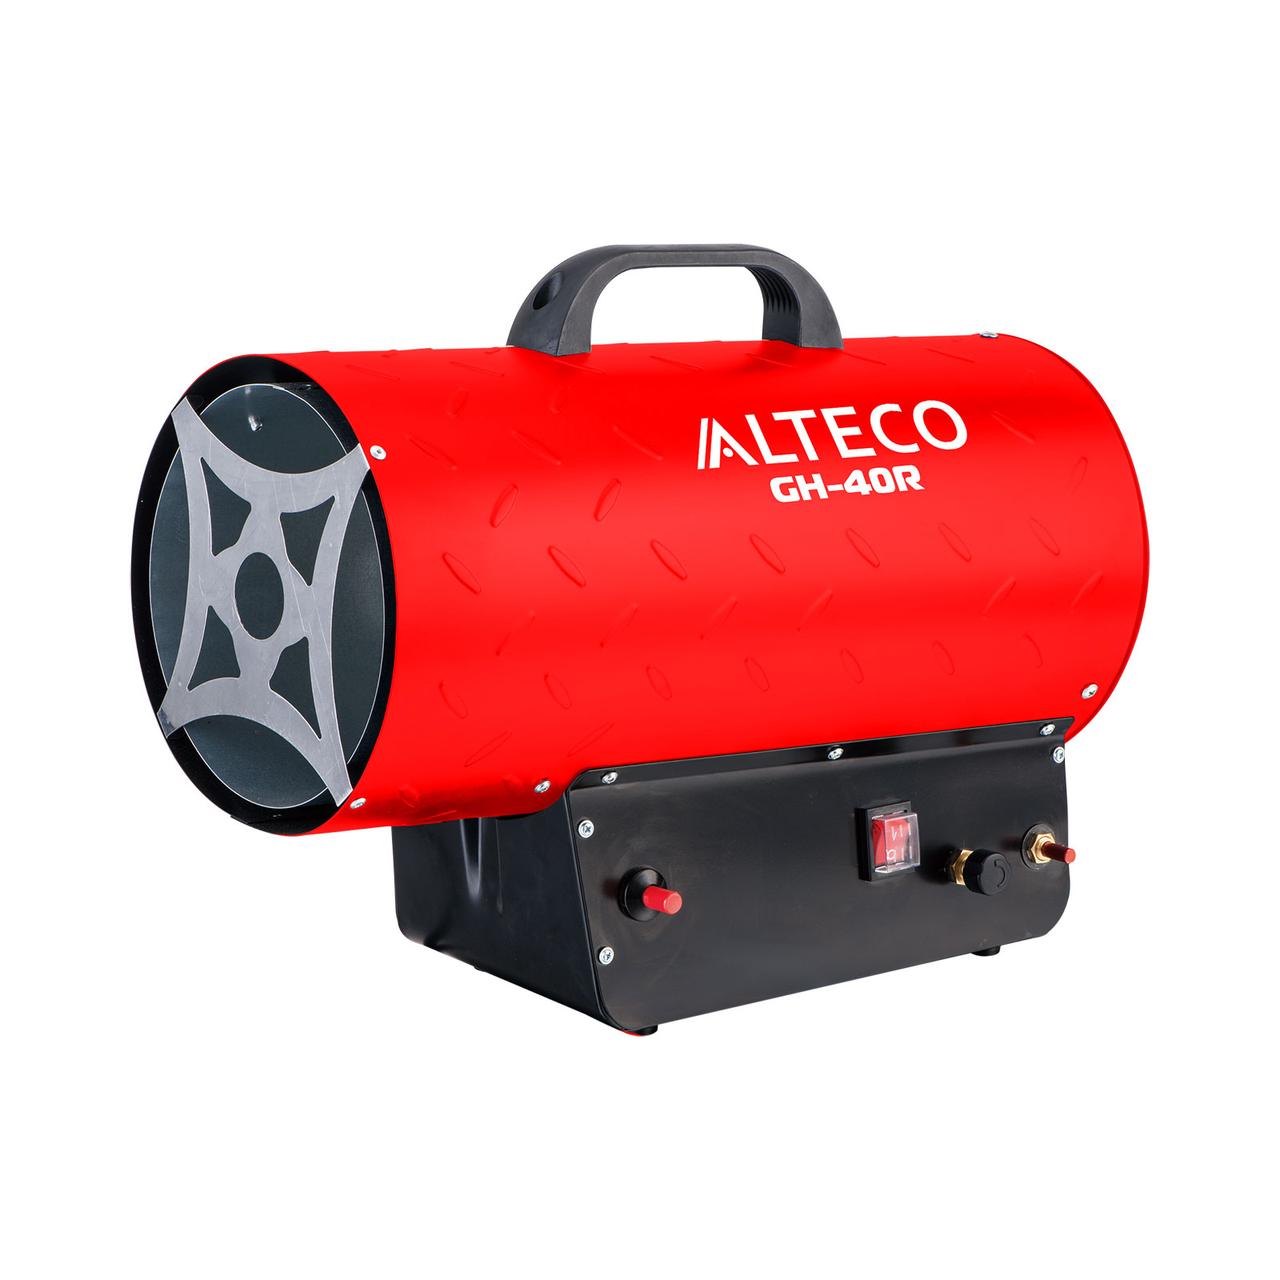 Нагреватель газовый ALTECO GH 40R